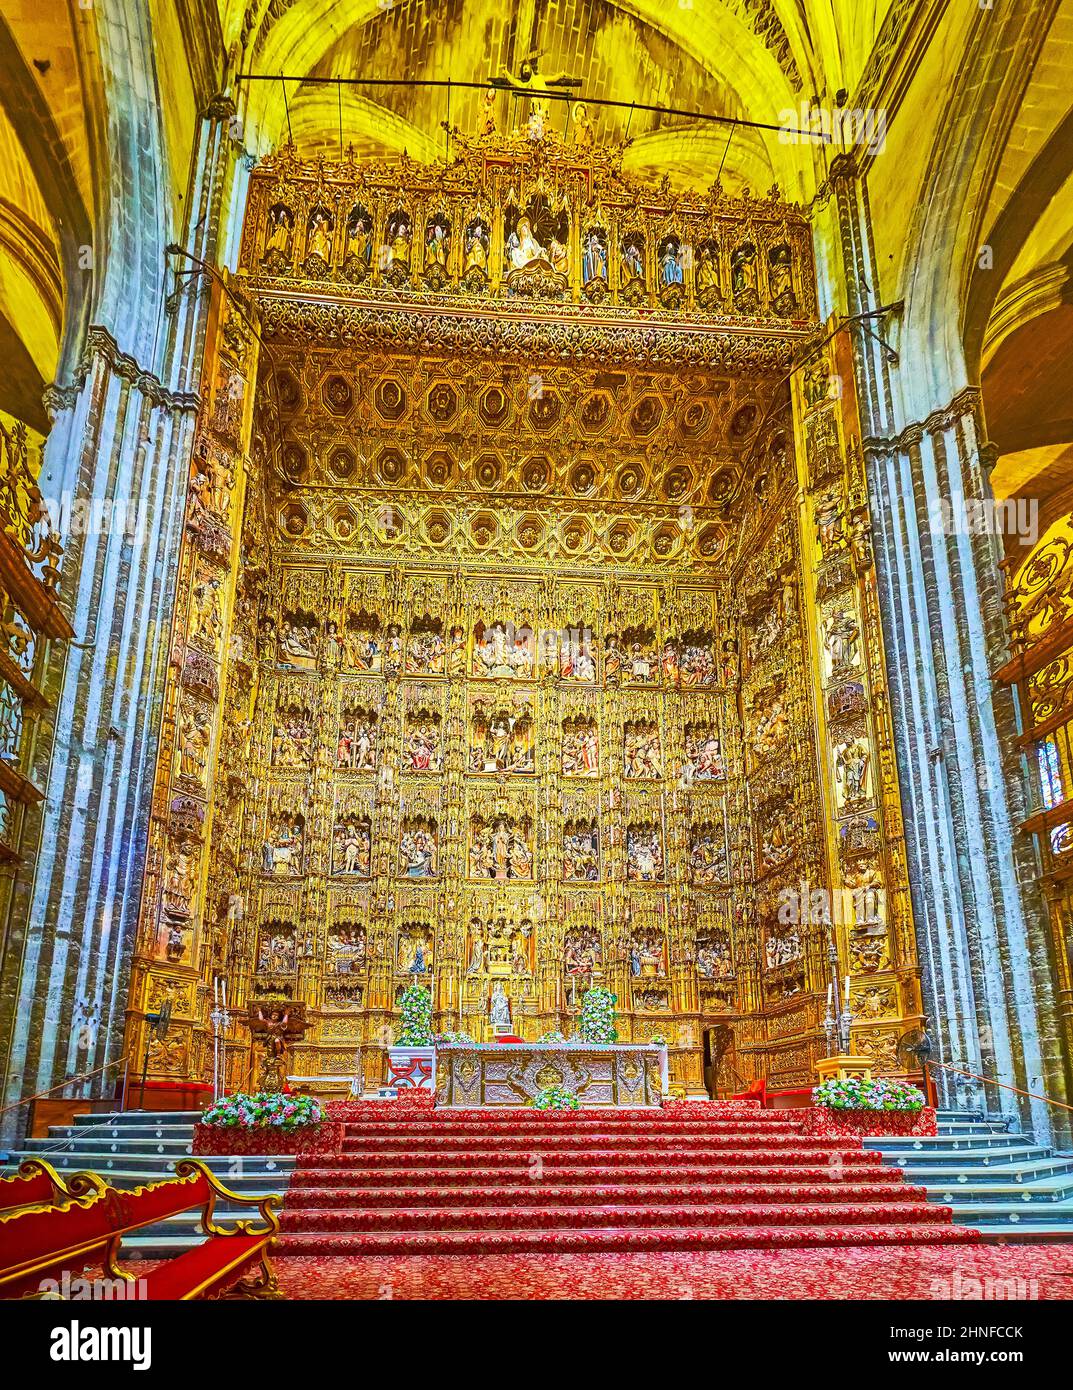 SEVILLA, SPANIEN - 29. SEPTEMBER 2019: Der einzigartige geschnitzte Holzaltar Bürgermeister (Hauptaltar) in Capilla Mayor (Hauptkapelle) der Kathedrale von Sevilla, am 29. September in S Stockfoto